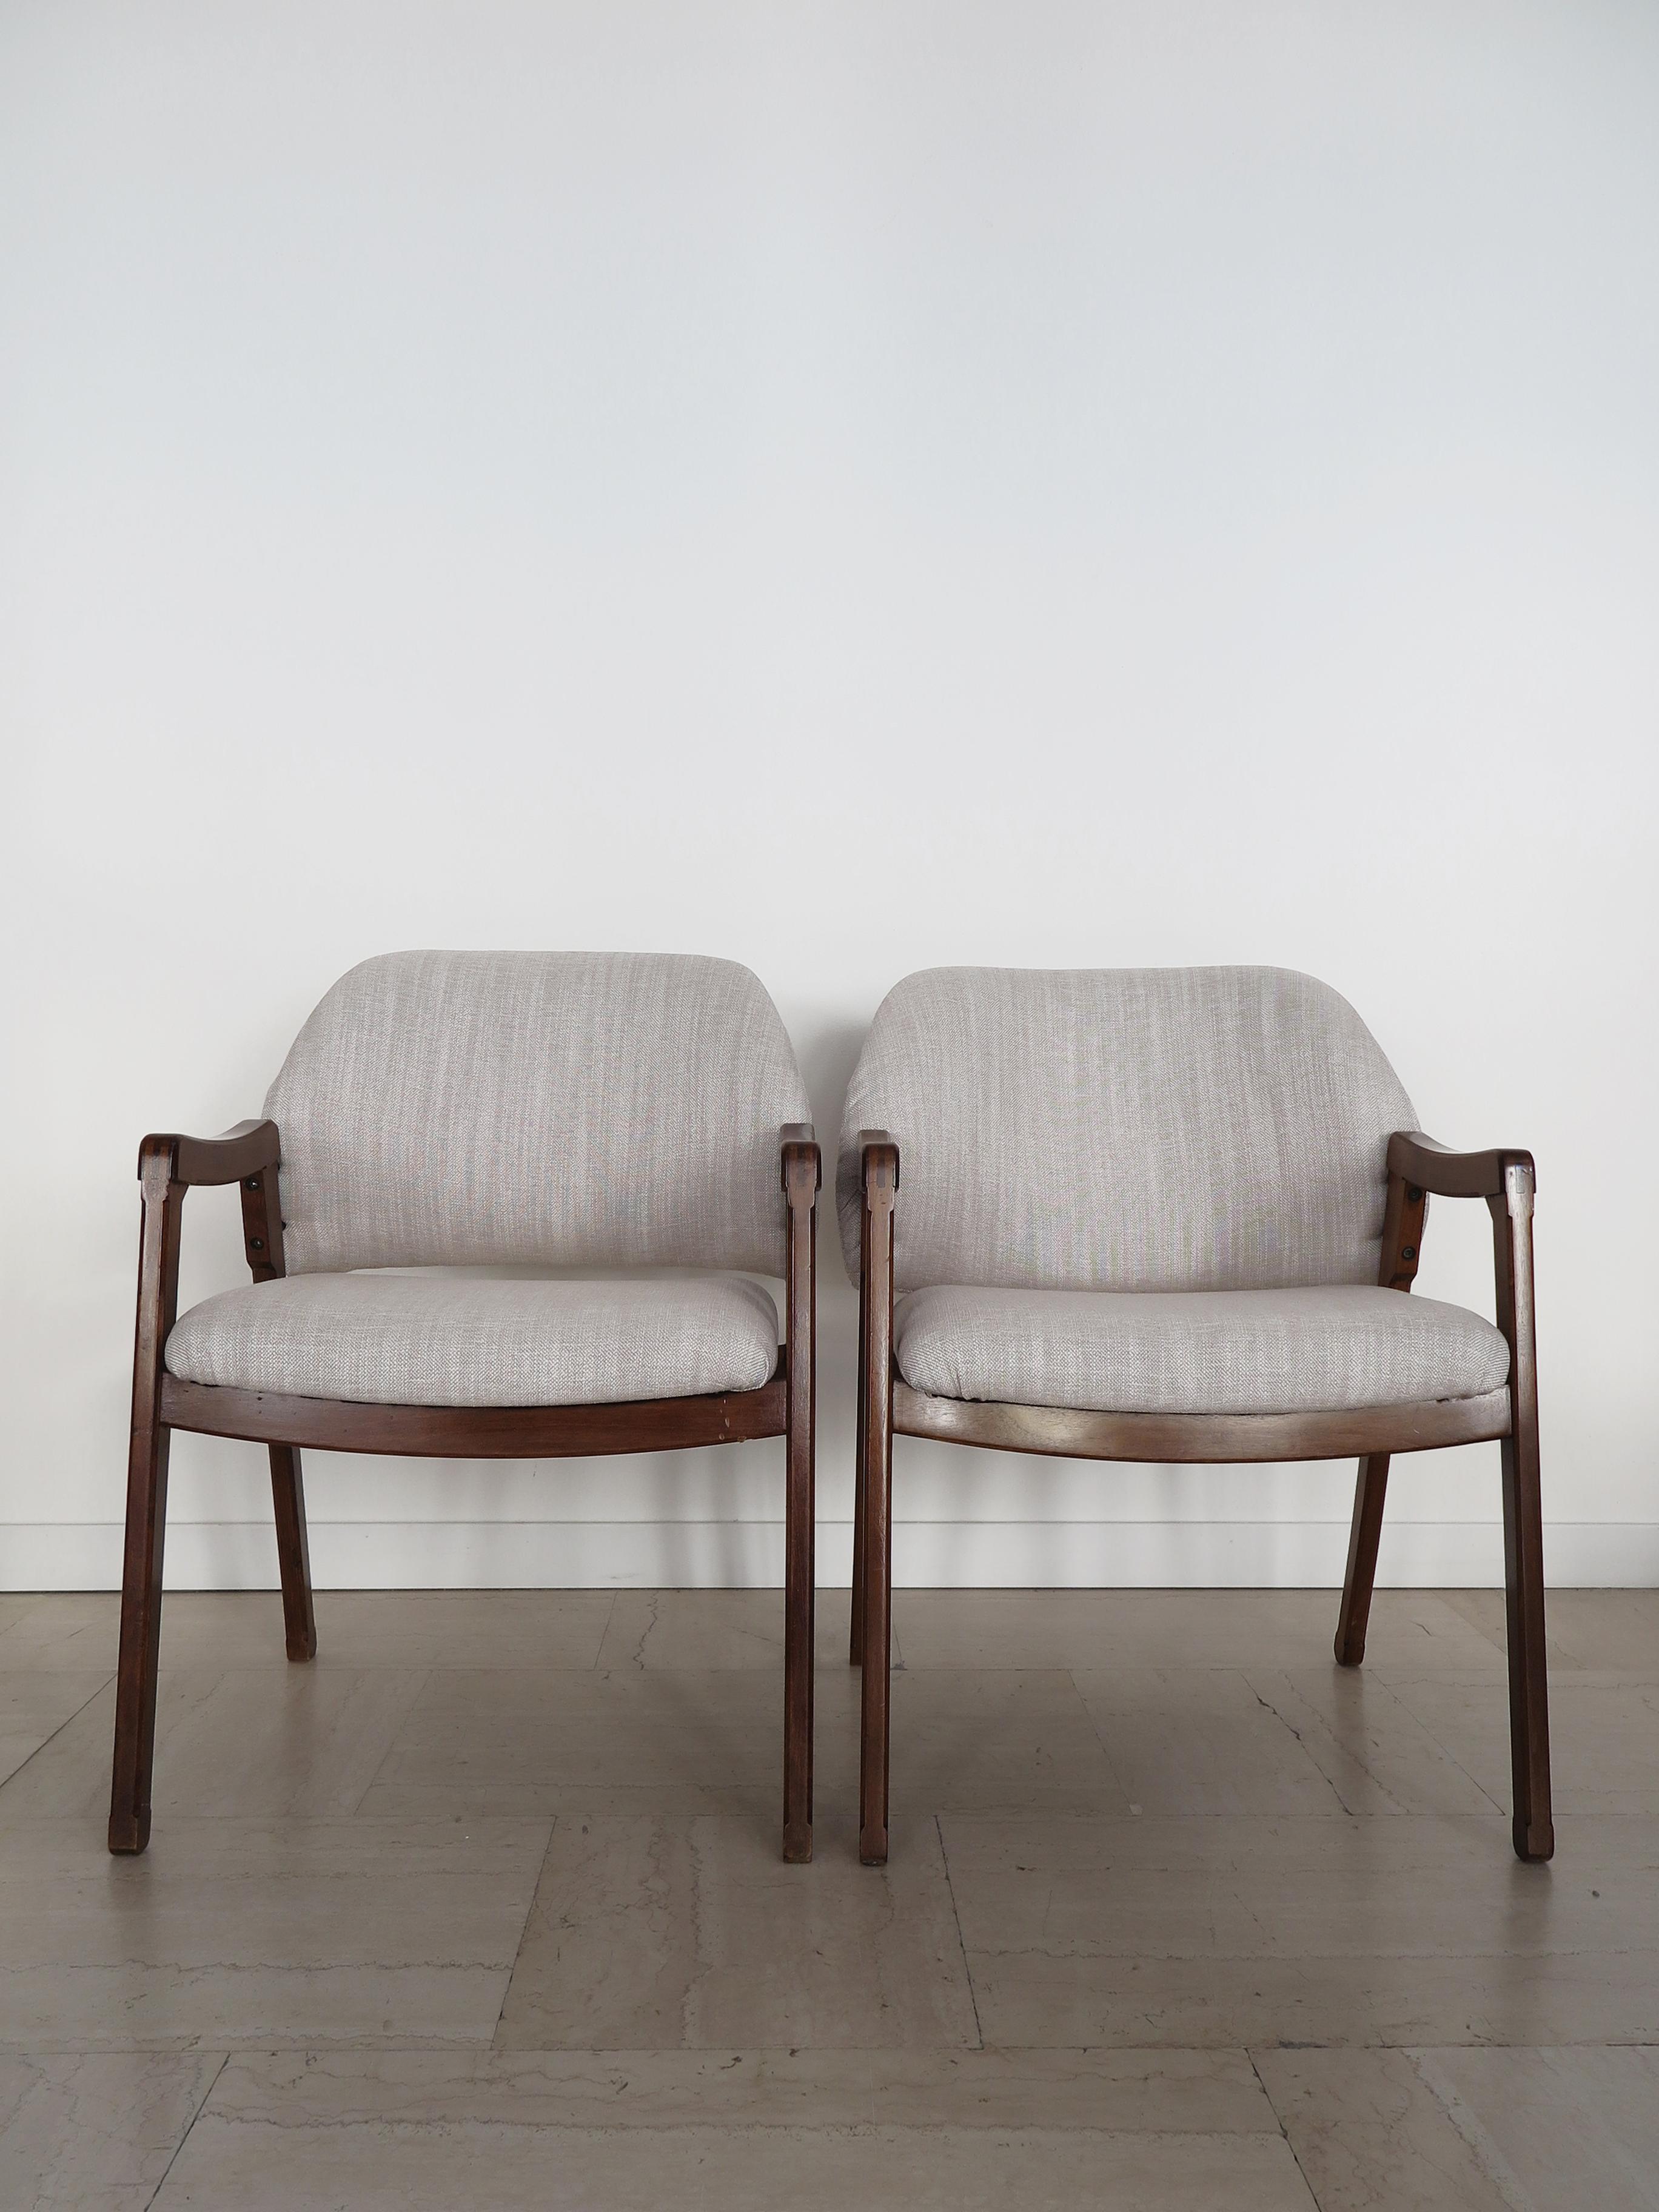 Ensemble de deux fauteuils design italien du milieu du siècle modèle 814 conçu par Ico Parisi pour Cassina en 1961, structure en bois massif et nouveau revêtement en tissu, Italie années 1960.
Label original de Cassina dans un fauteuil.

Veuillez